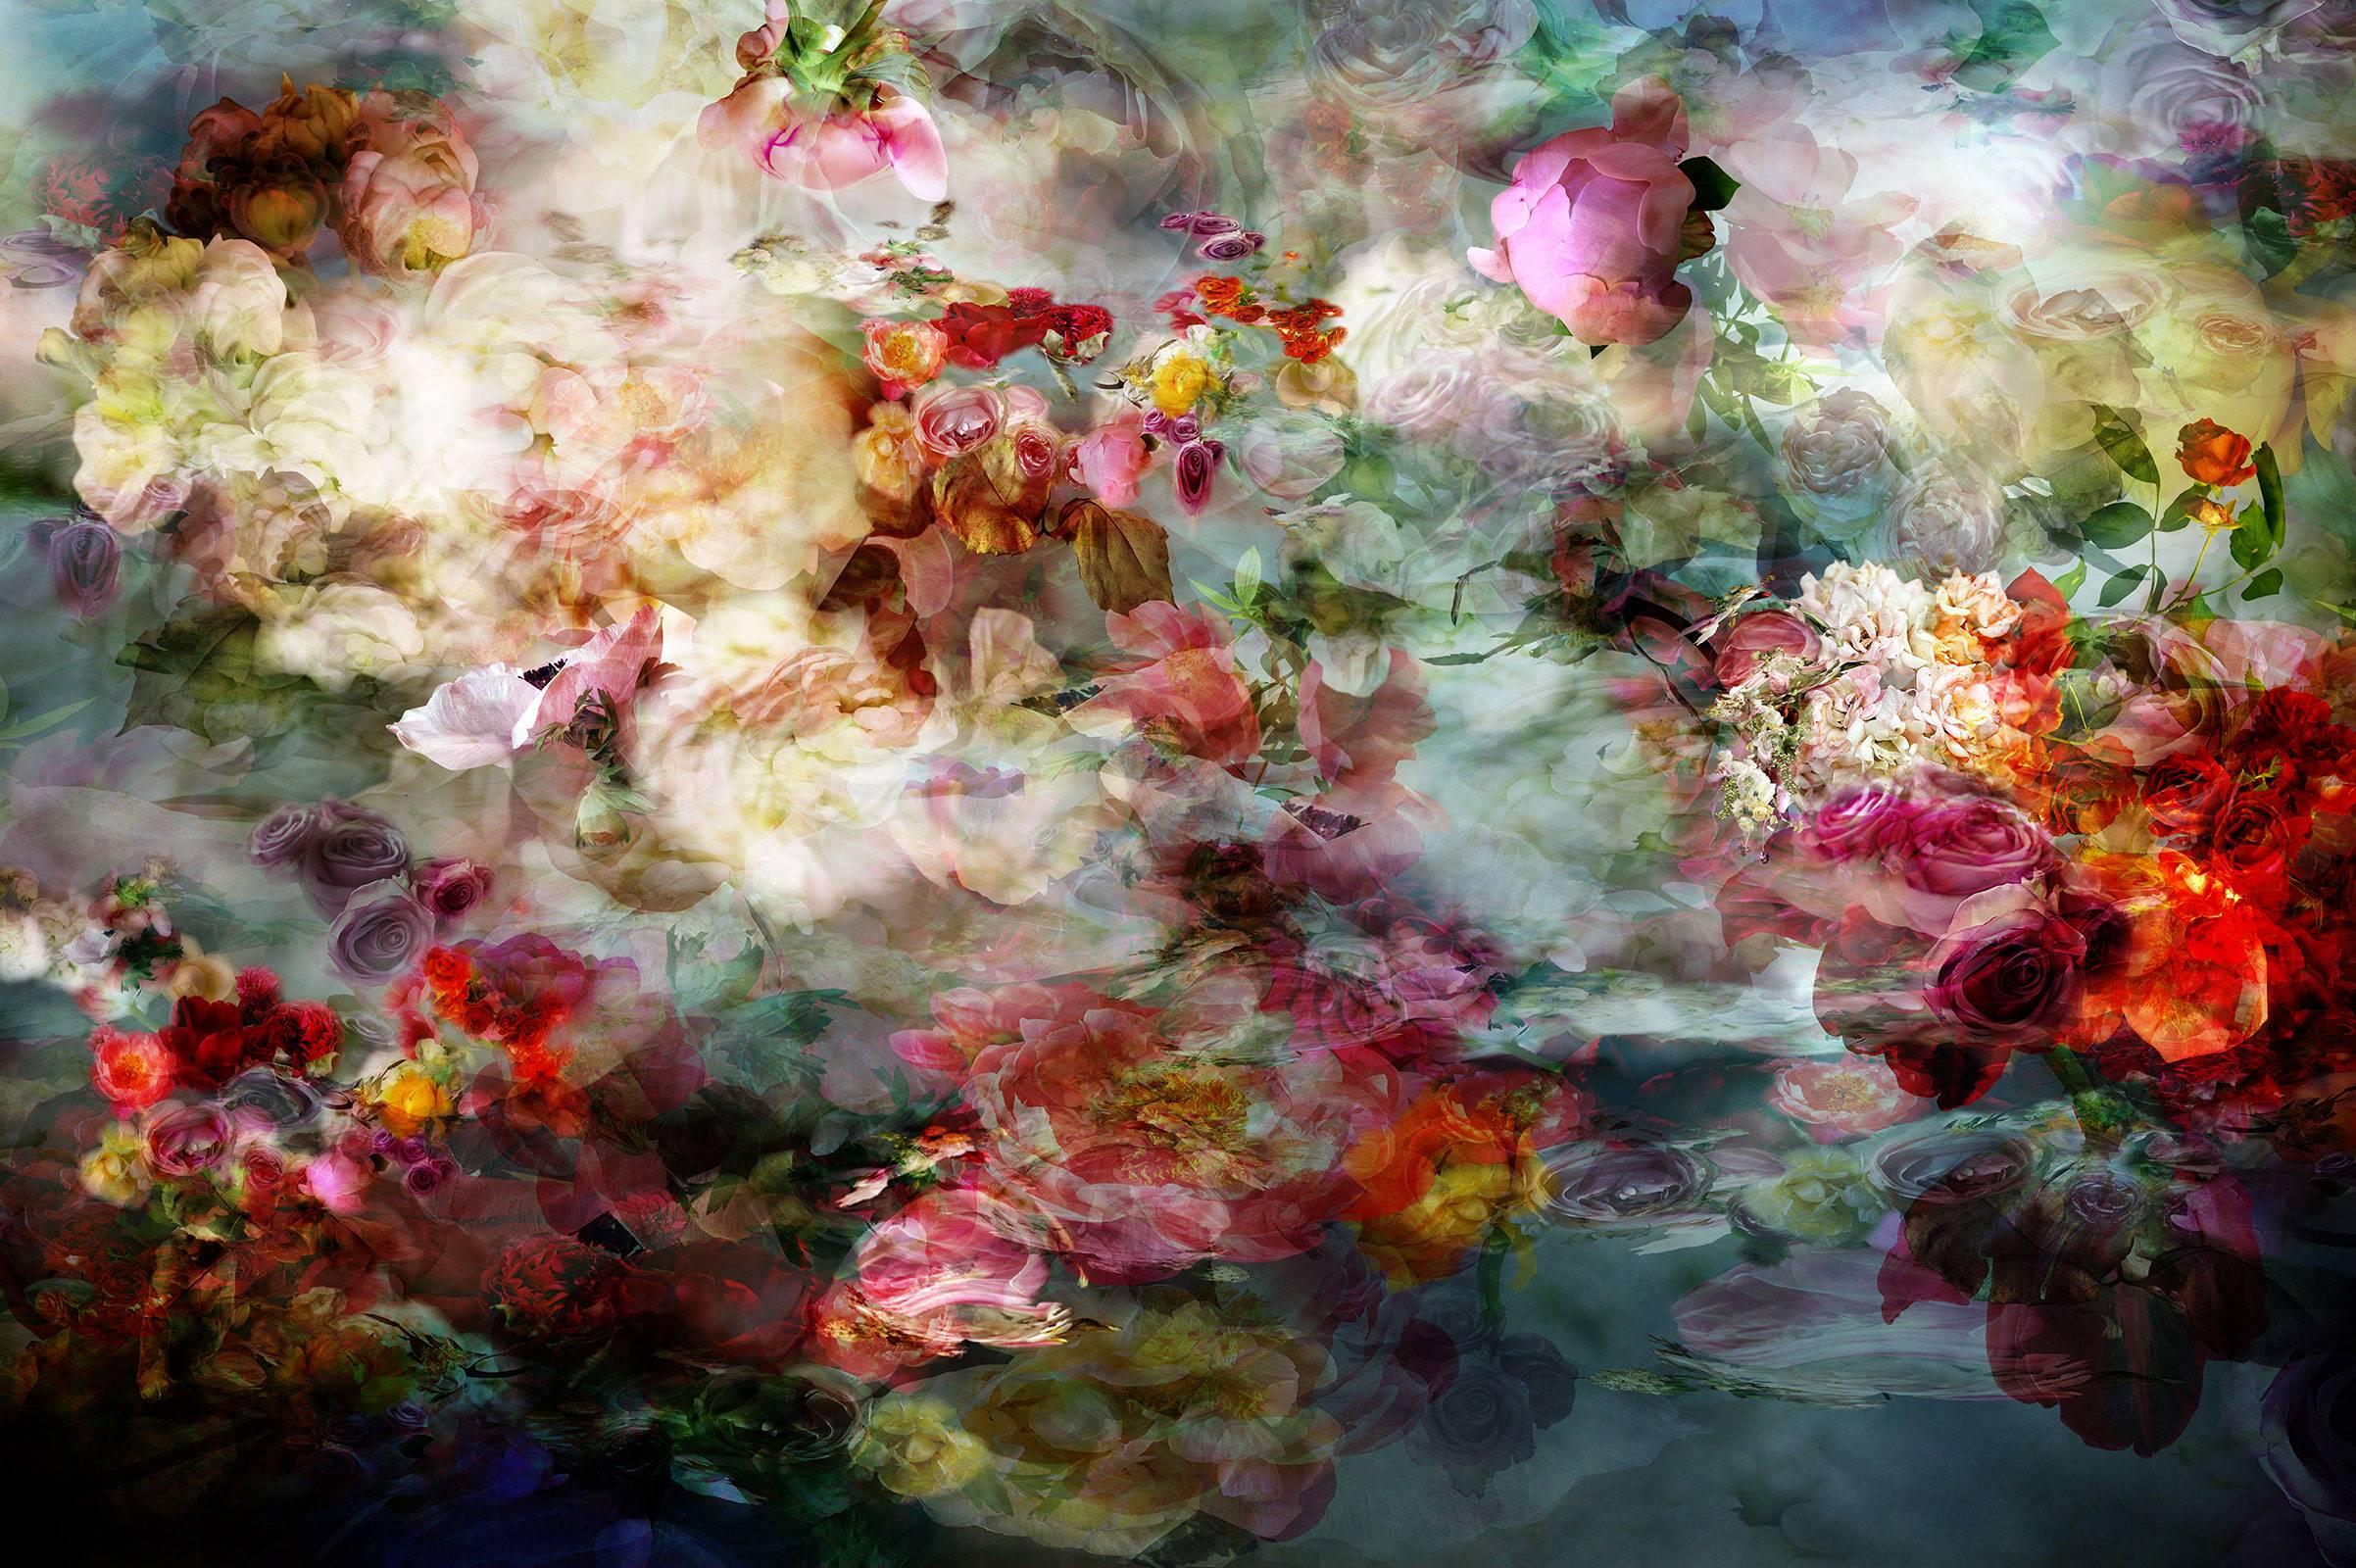 Still-Life Photograph Isabelle Menin - River in my head 10 - Photographie contemporaine colorée de natures mortes florales